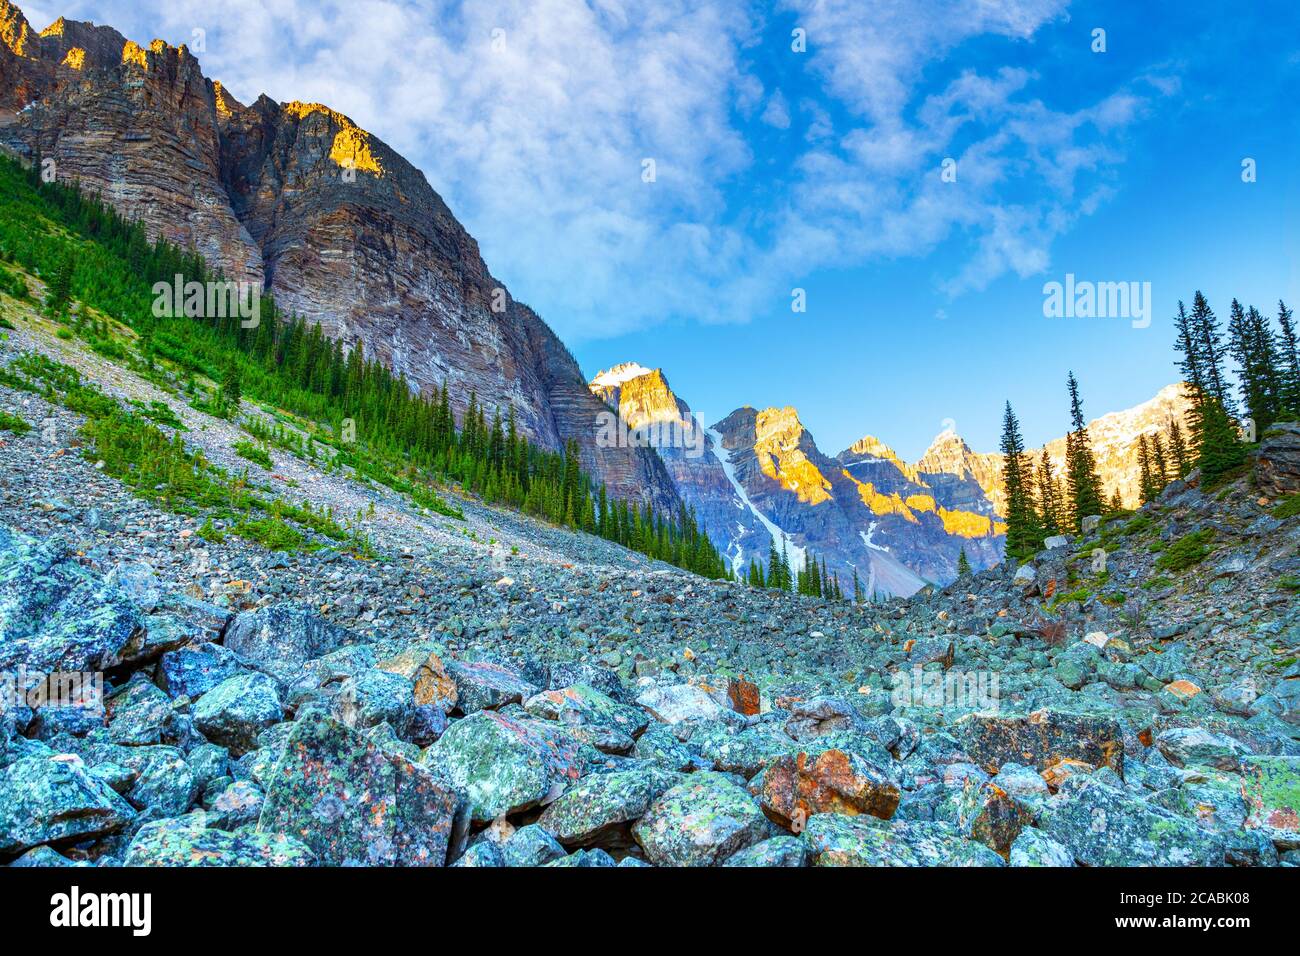 Grite las pendientes por debajo de la Torre de Babel a lo largo del sendero de los Lagos de Consolación cerca del Lago Moraine en el Parque Nacional Banff, con campo de roca y el Valle de los diez Foto de stock